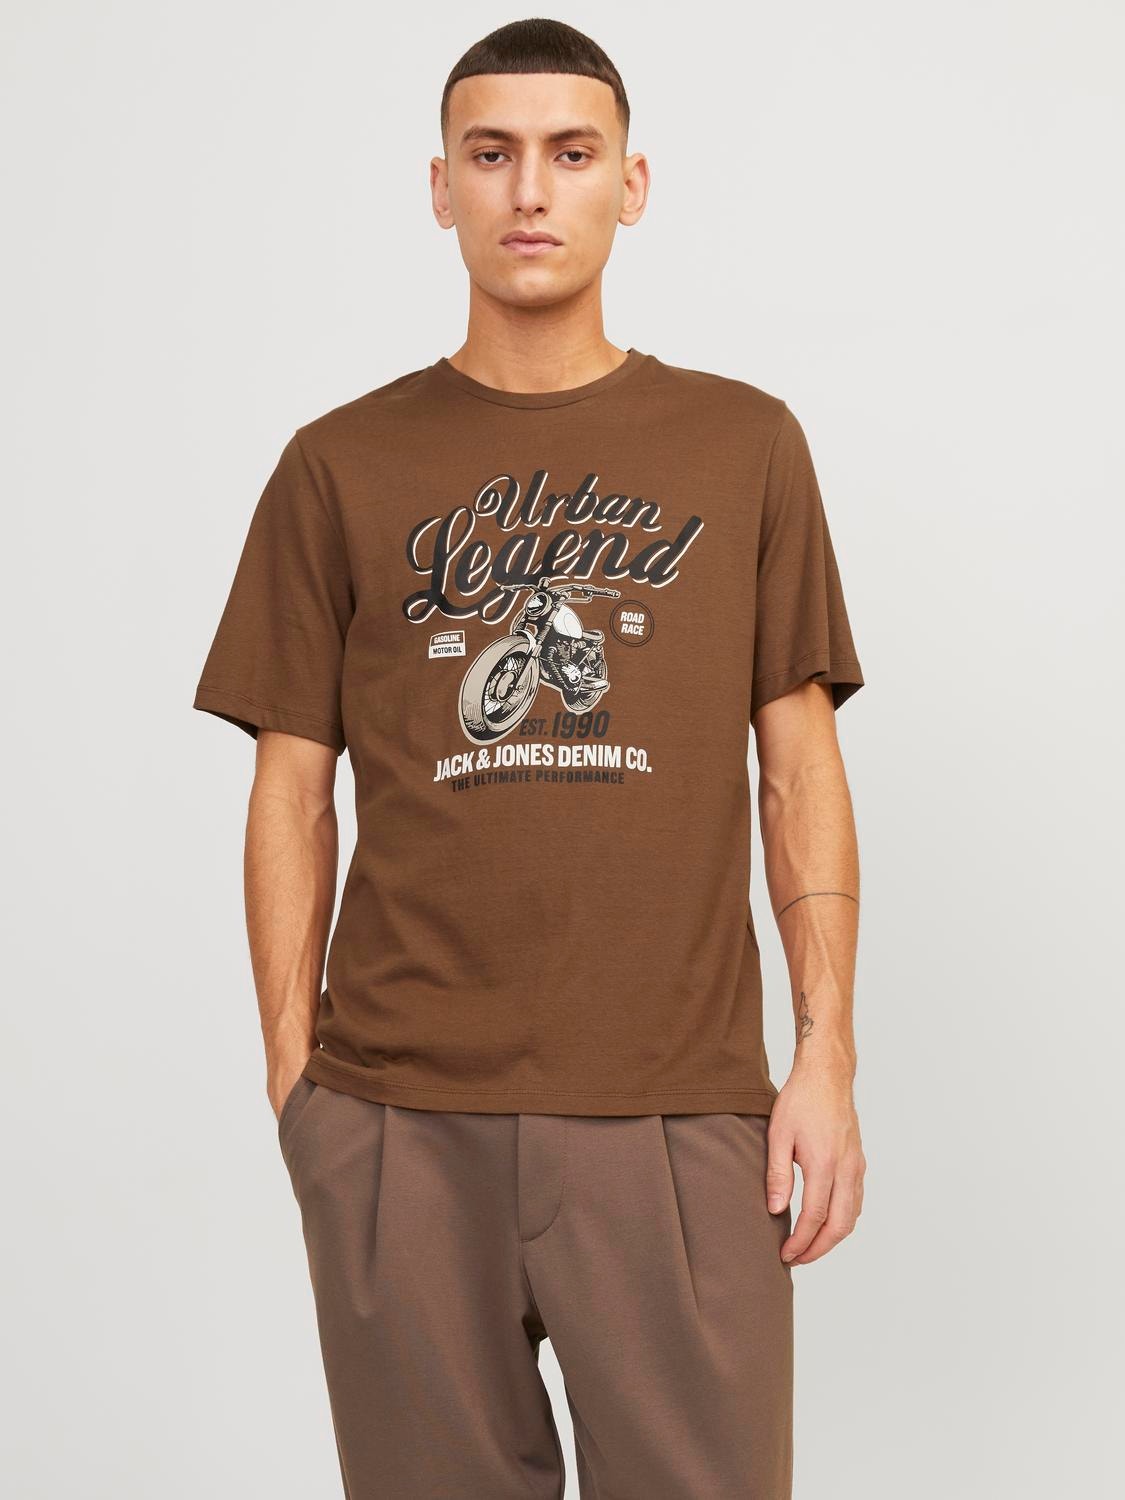 Jack & Jones Logo Rundhals T-shirt -Toffee - 12234567